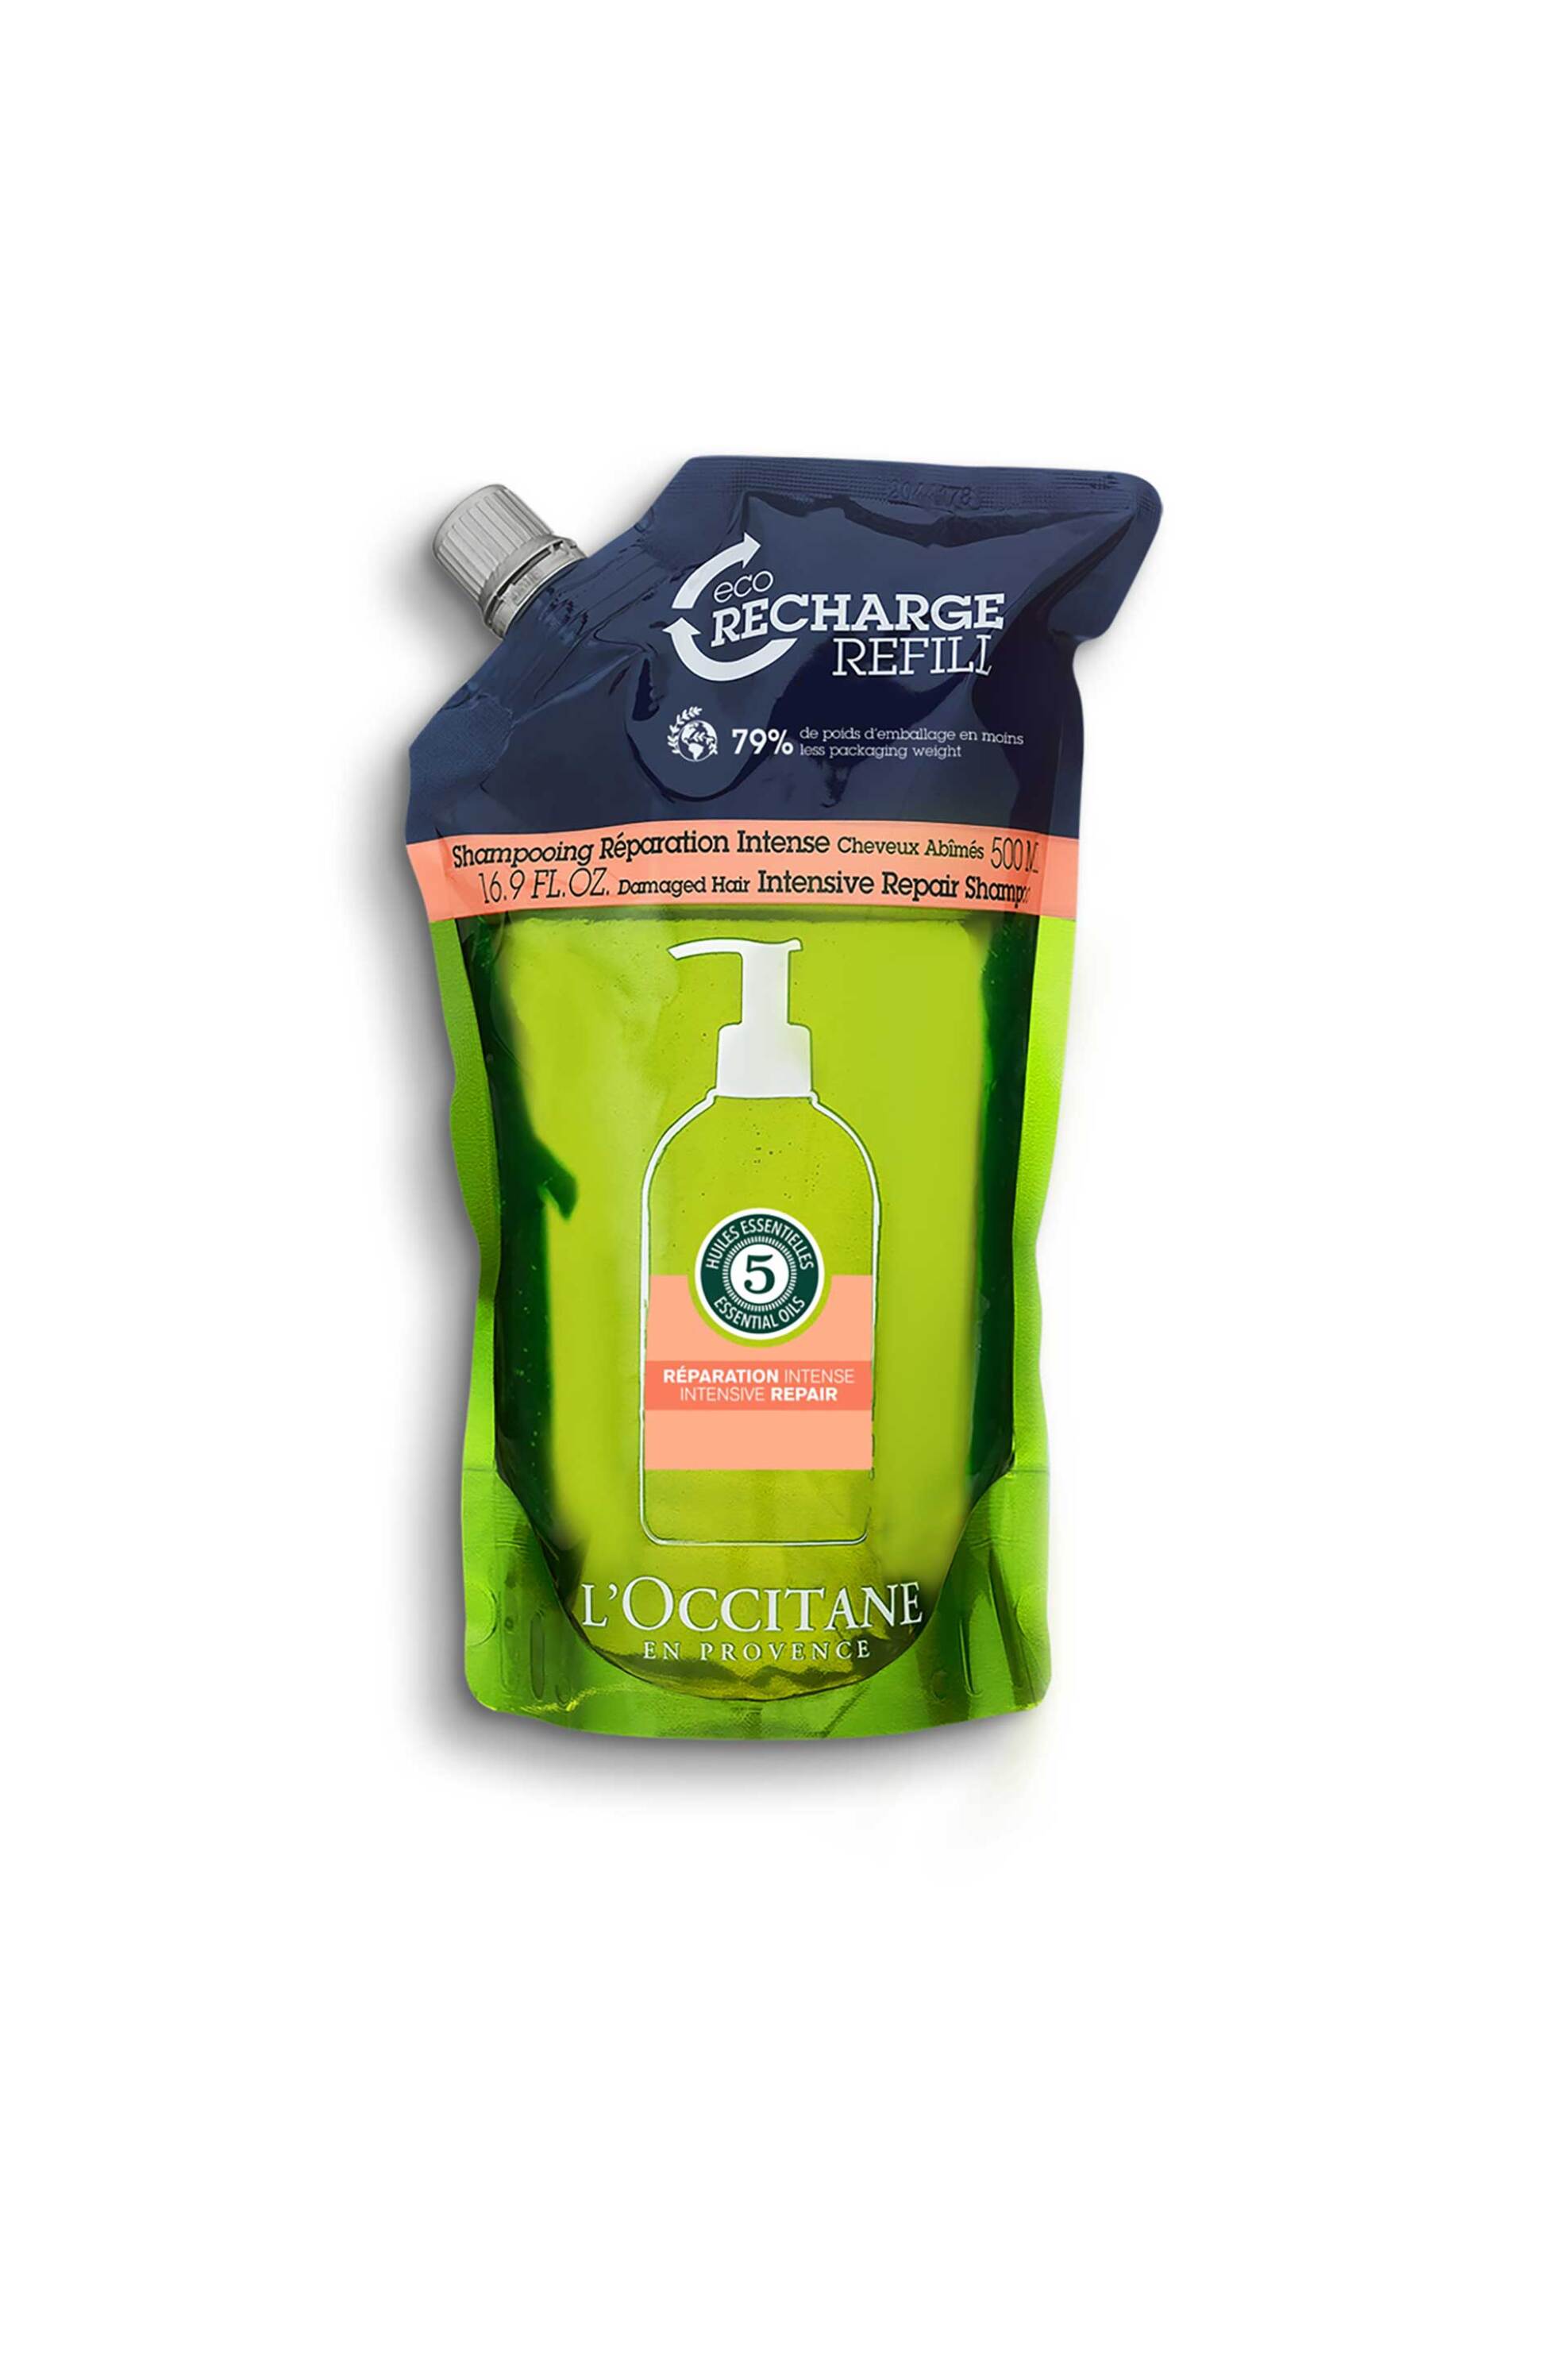 Προϊόντα Ομορφιάς > Προϊόντα Περιποίησης Μαλλιών > Σαμπουάν Μαλλιών L'Occitane Aromachologie Intensive Repair Shampoo Eco-Refill 500 ml - 1058595